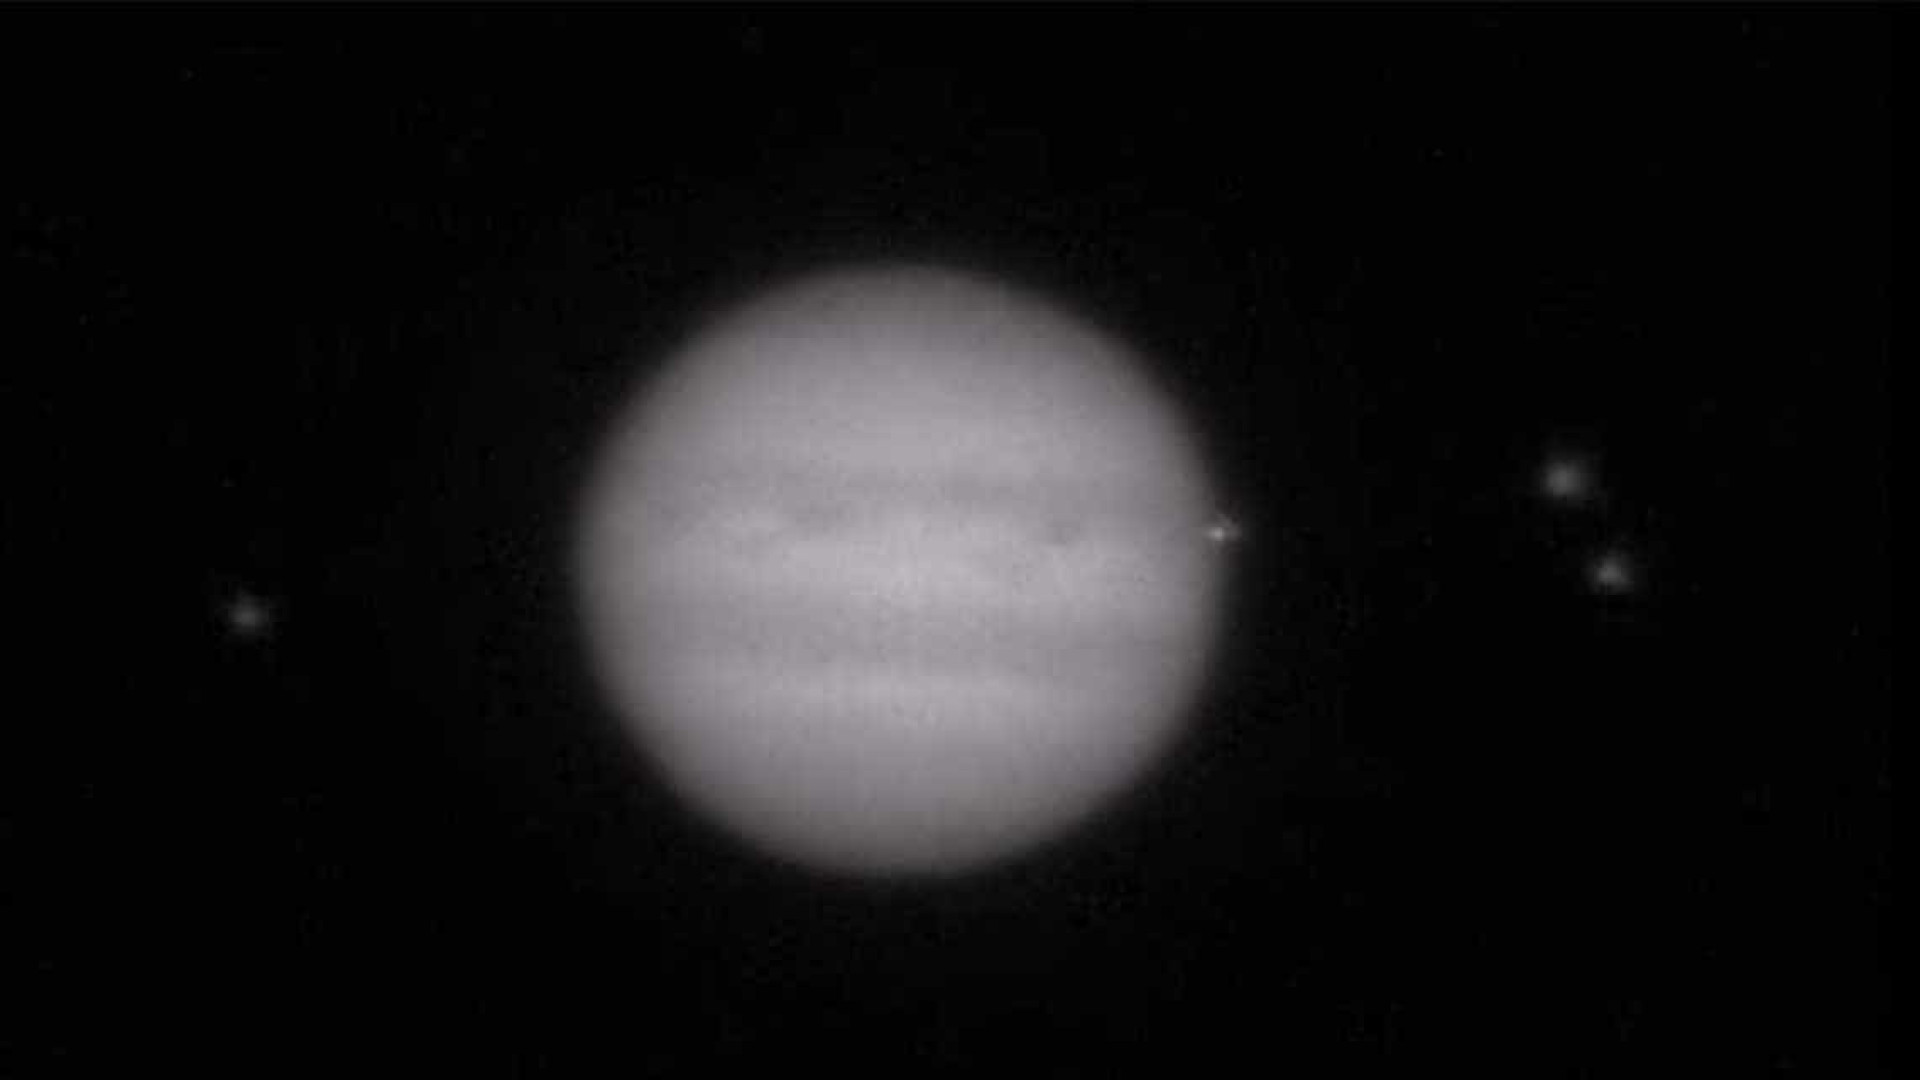 Objeto não-identificado atinge Júpiter e intriga cientistas. Assista!